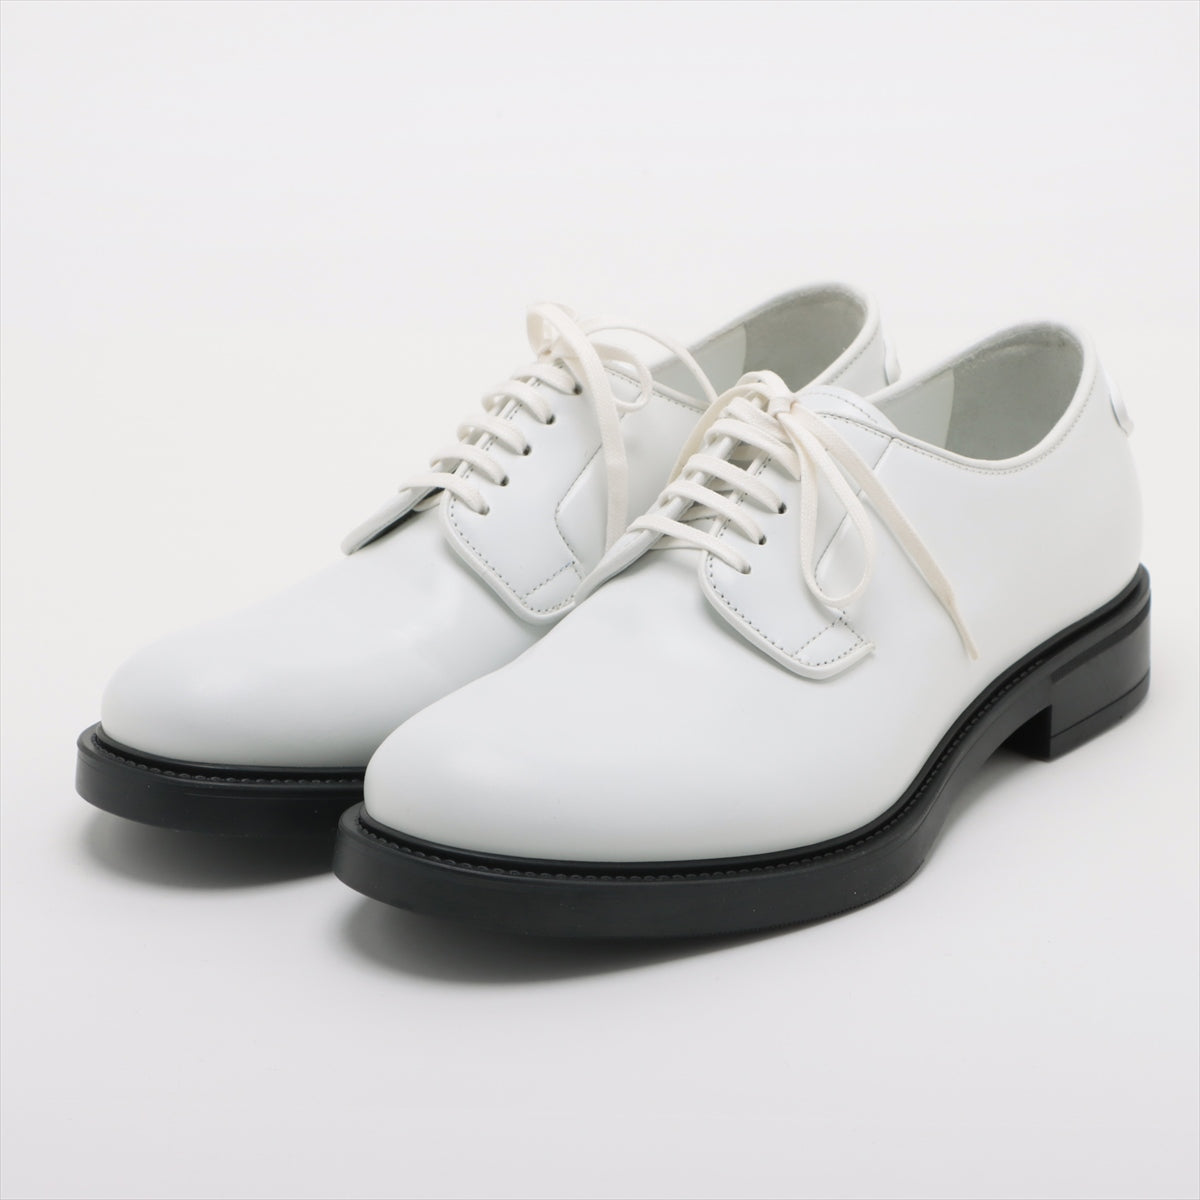 Prada Leather Leather shoes 5 1/2 Men's White 2EG394 Logo